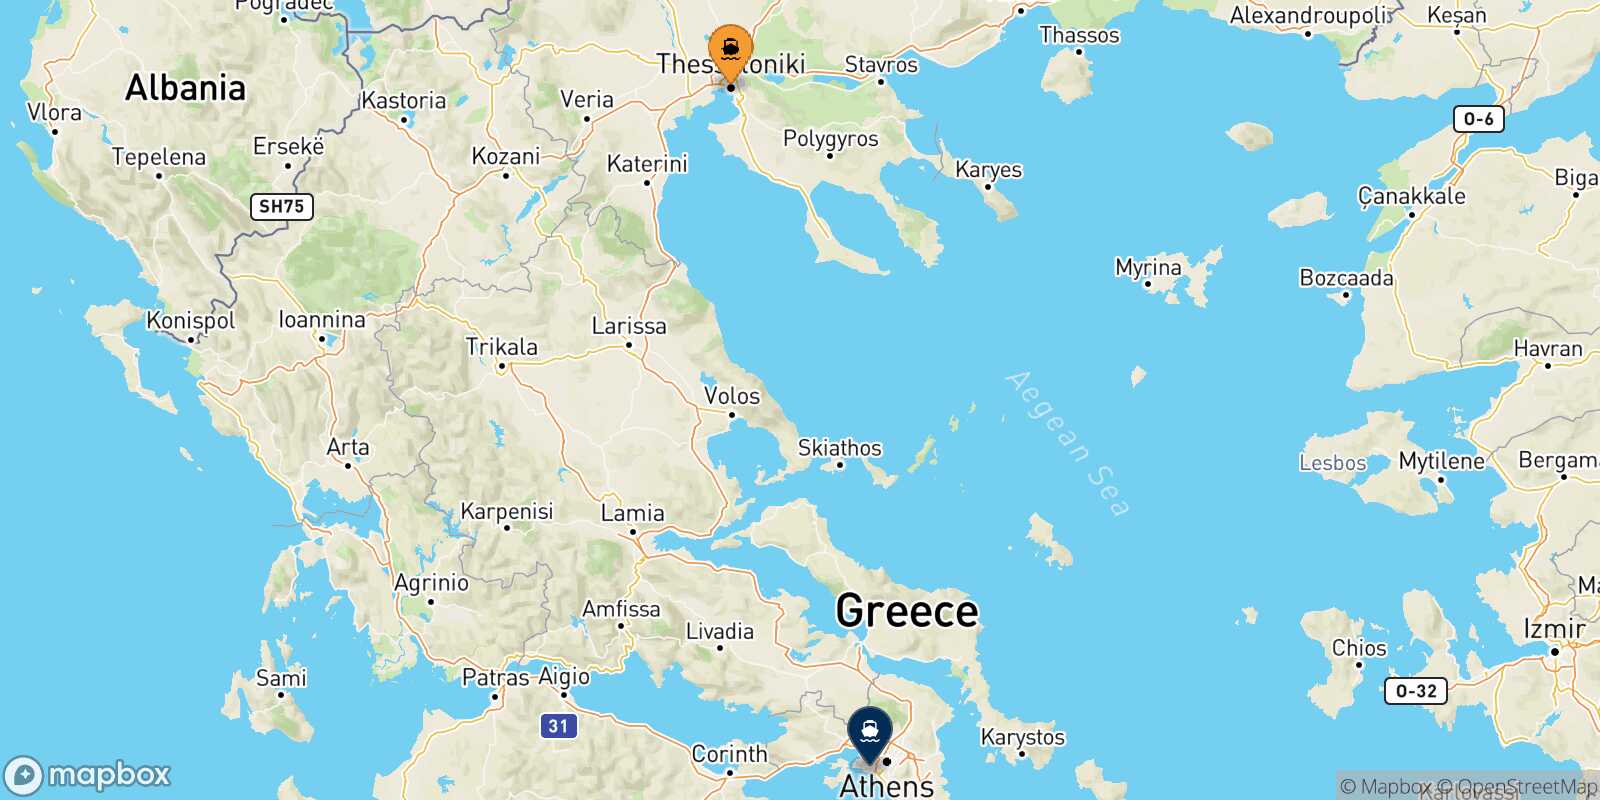 Thessaloniki Piraeus route map